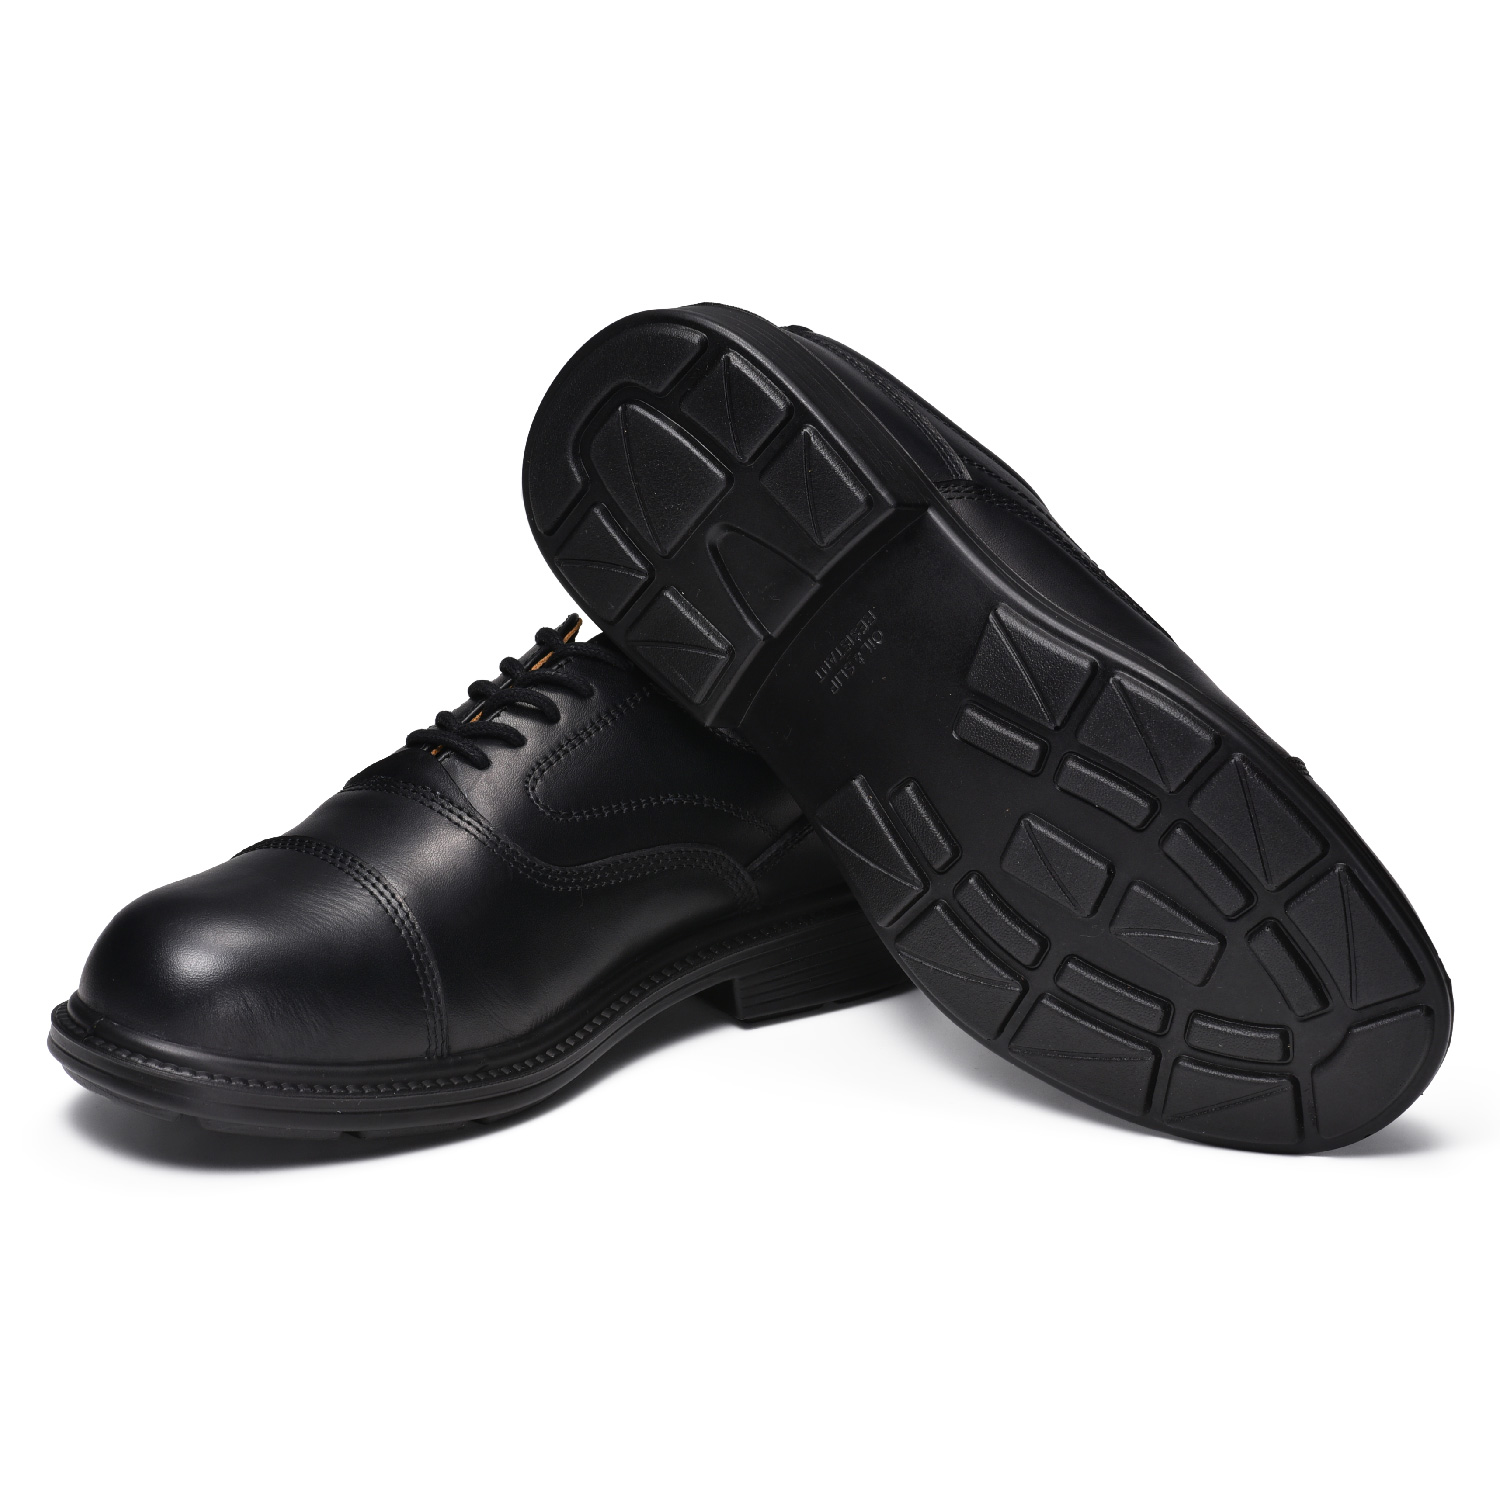 Chaussures de sécurité en cuir S3 pour cadre et gestionnaire avec embout en acier L-7527